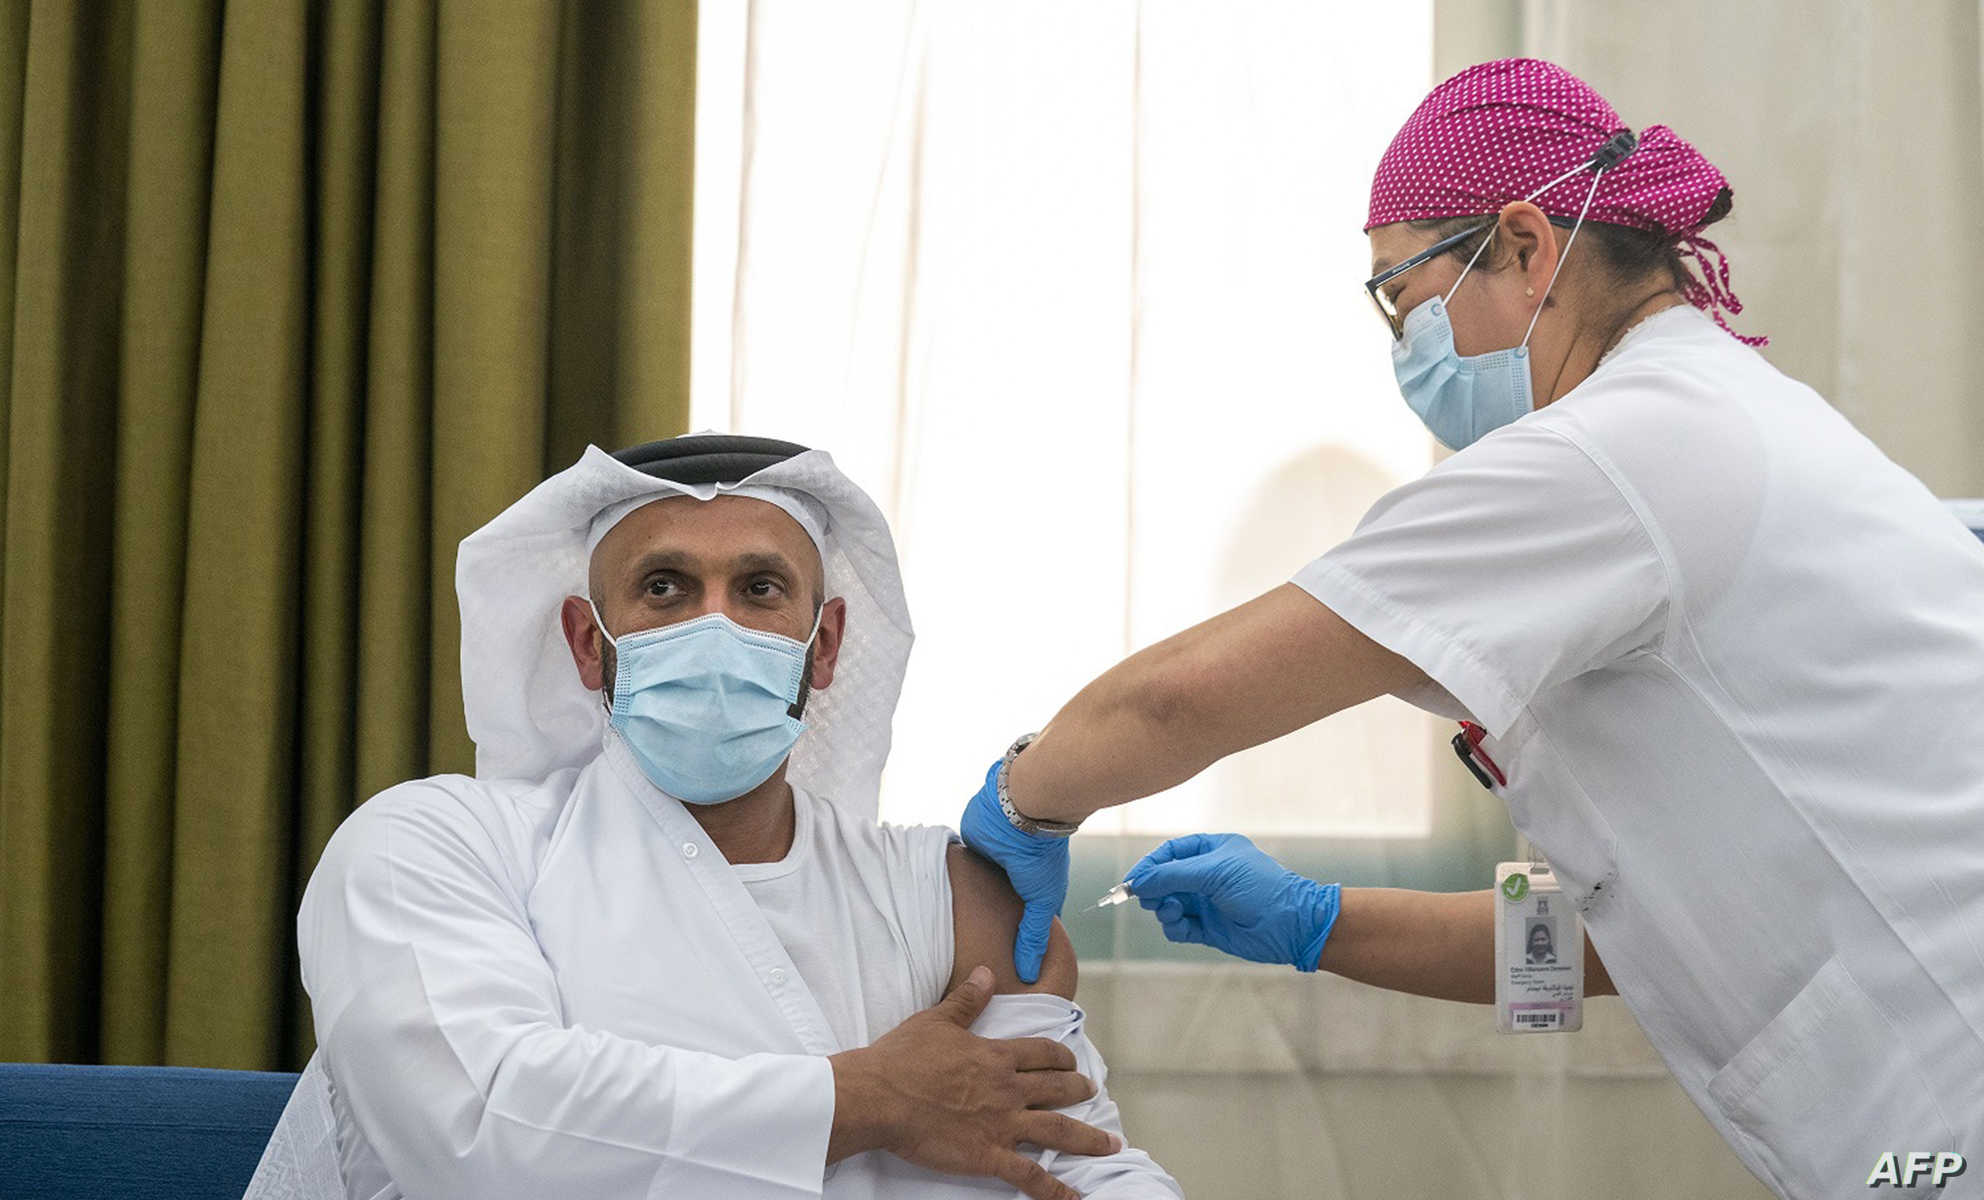   دبي تبدأ حملة لتطعيم مواطنيها بلقاح «فايزر - بيونتيك»